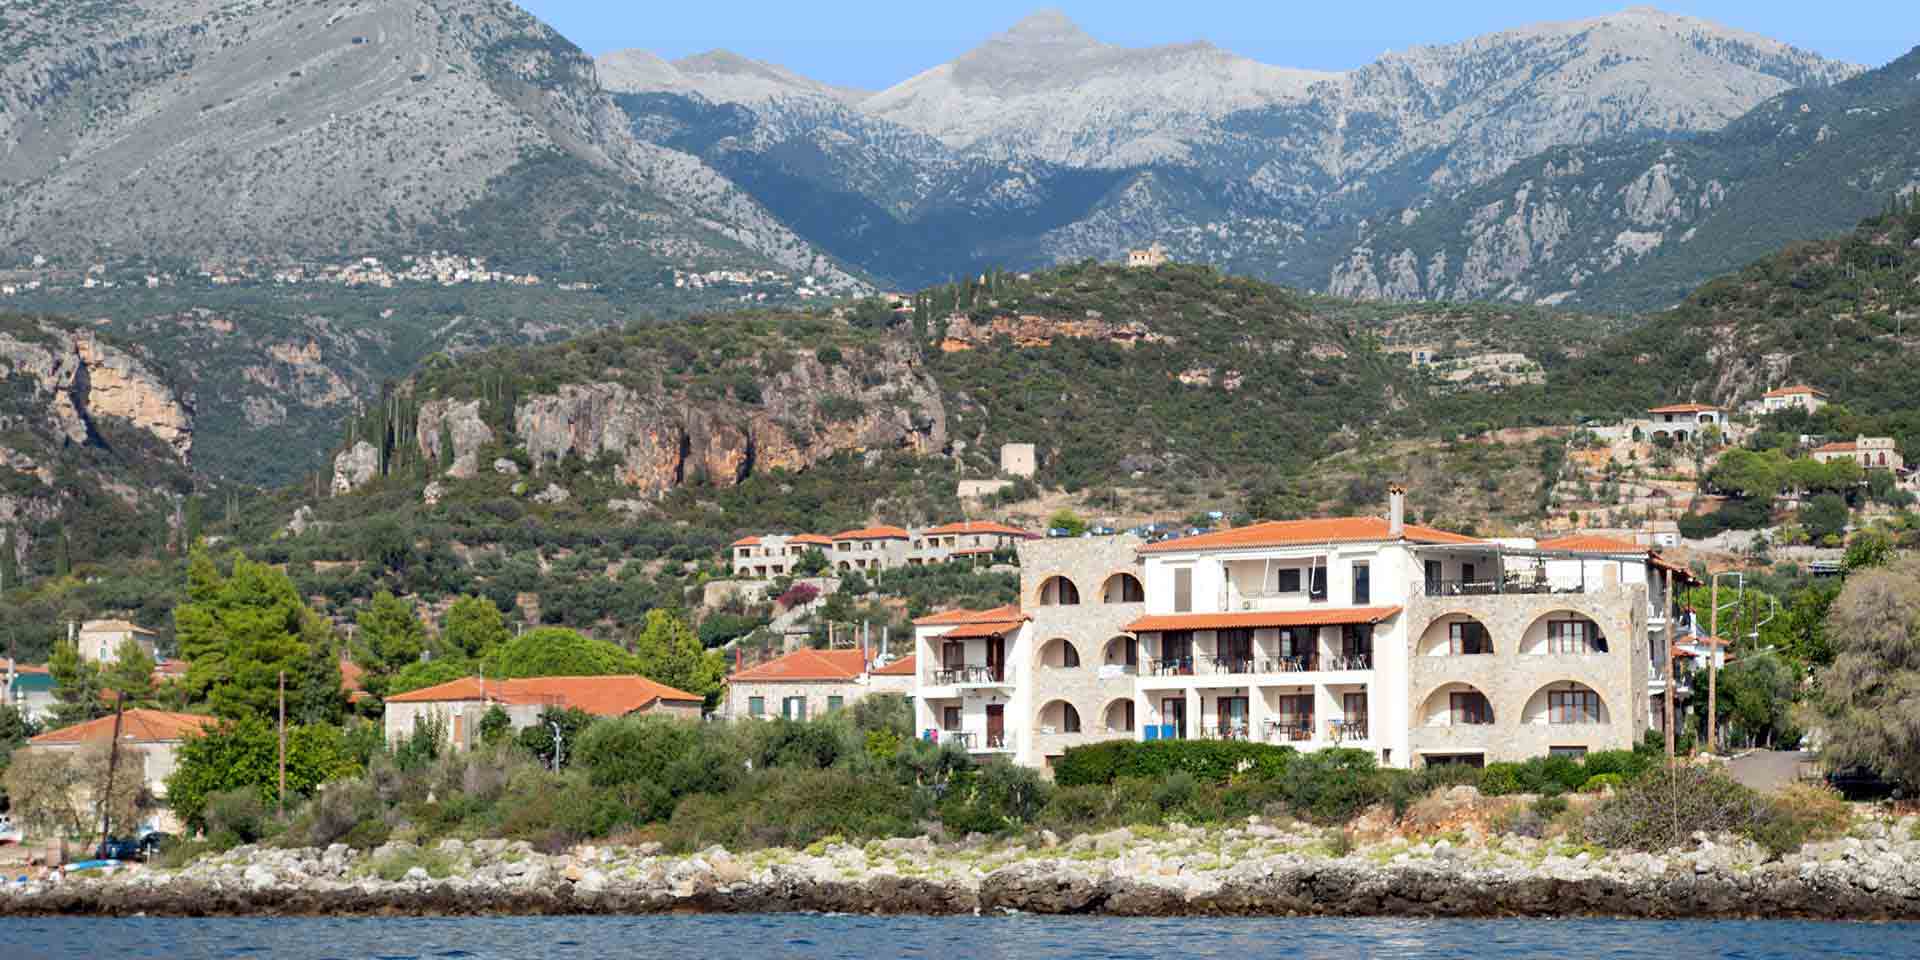 Ξενοδοχείο Λιακωτό, στους πρόποδες του Ταϋγέτου, στις ακτές της Μεσογείου